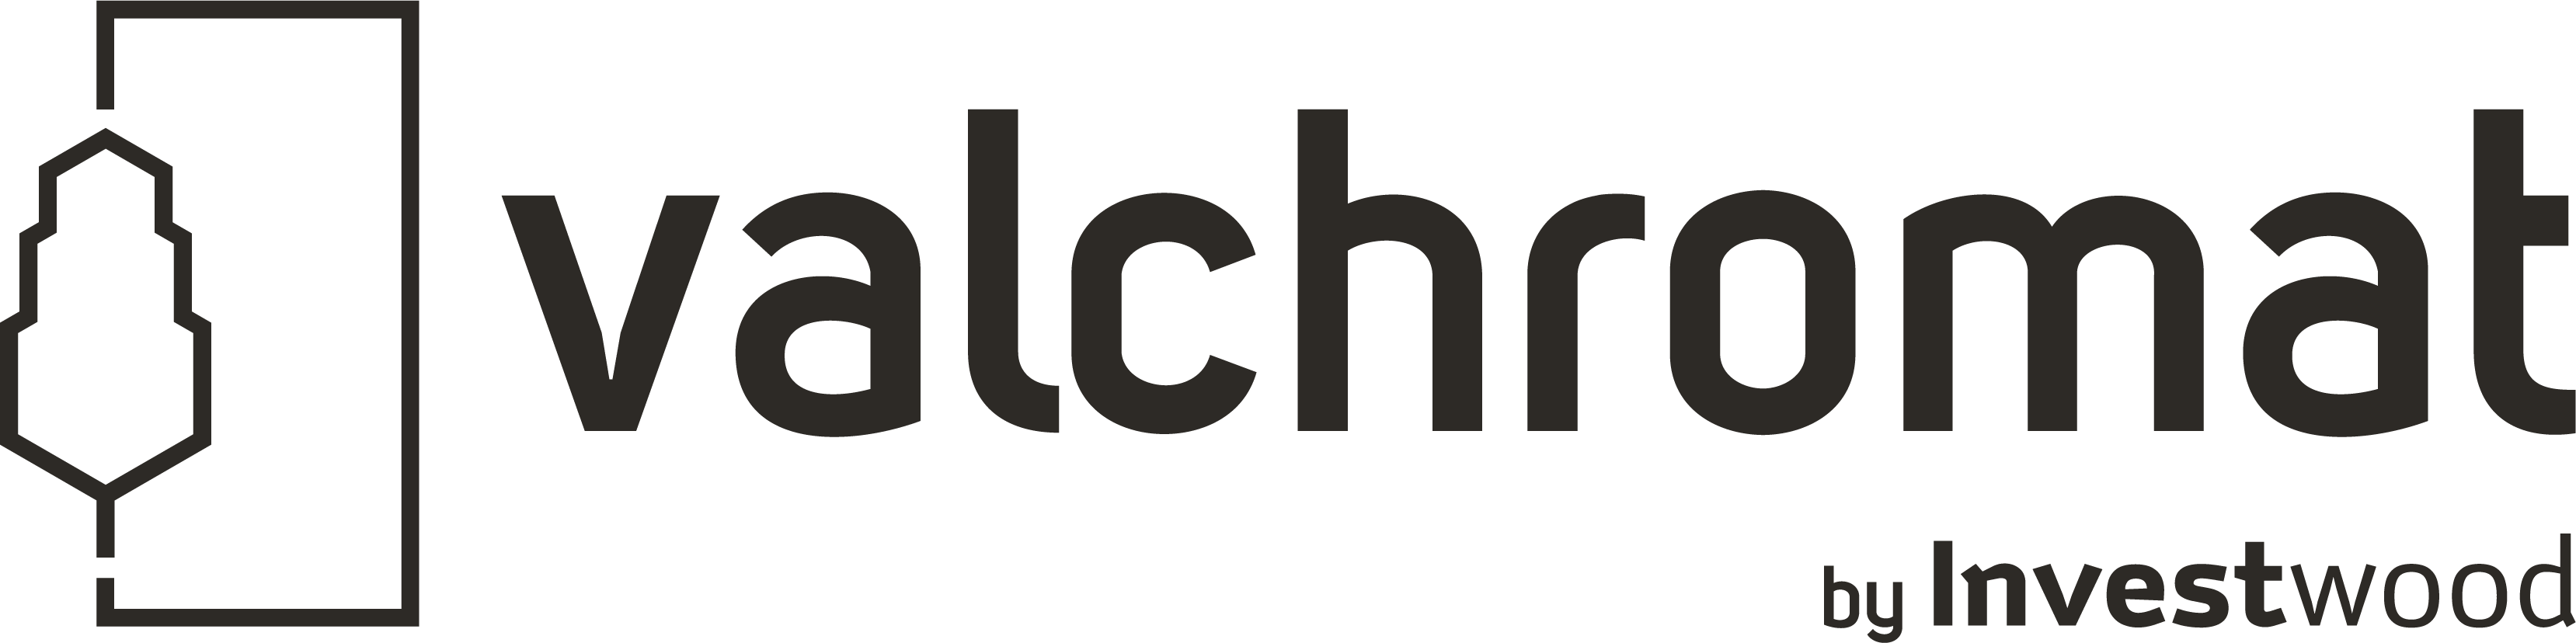 Valchromat_logo